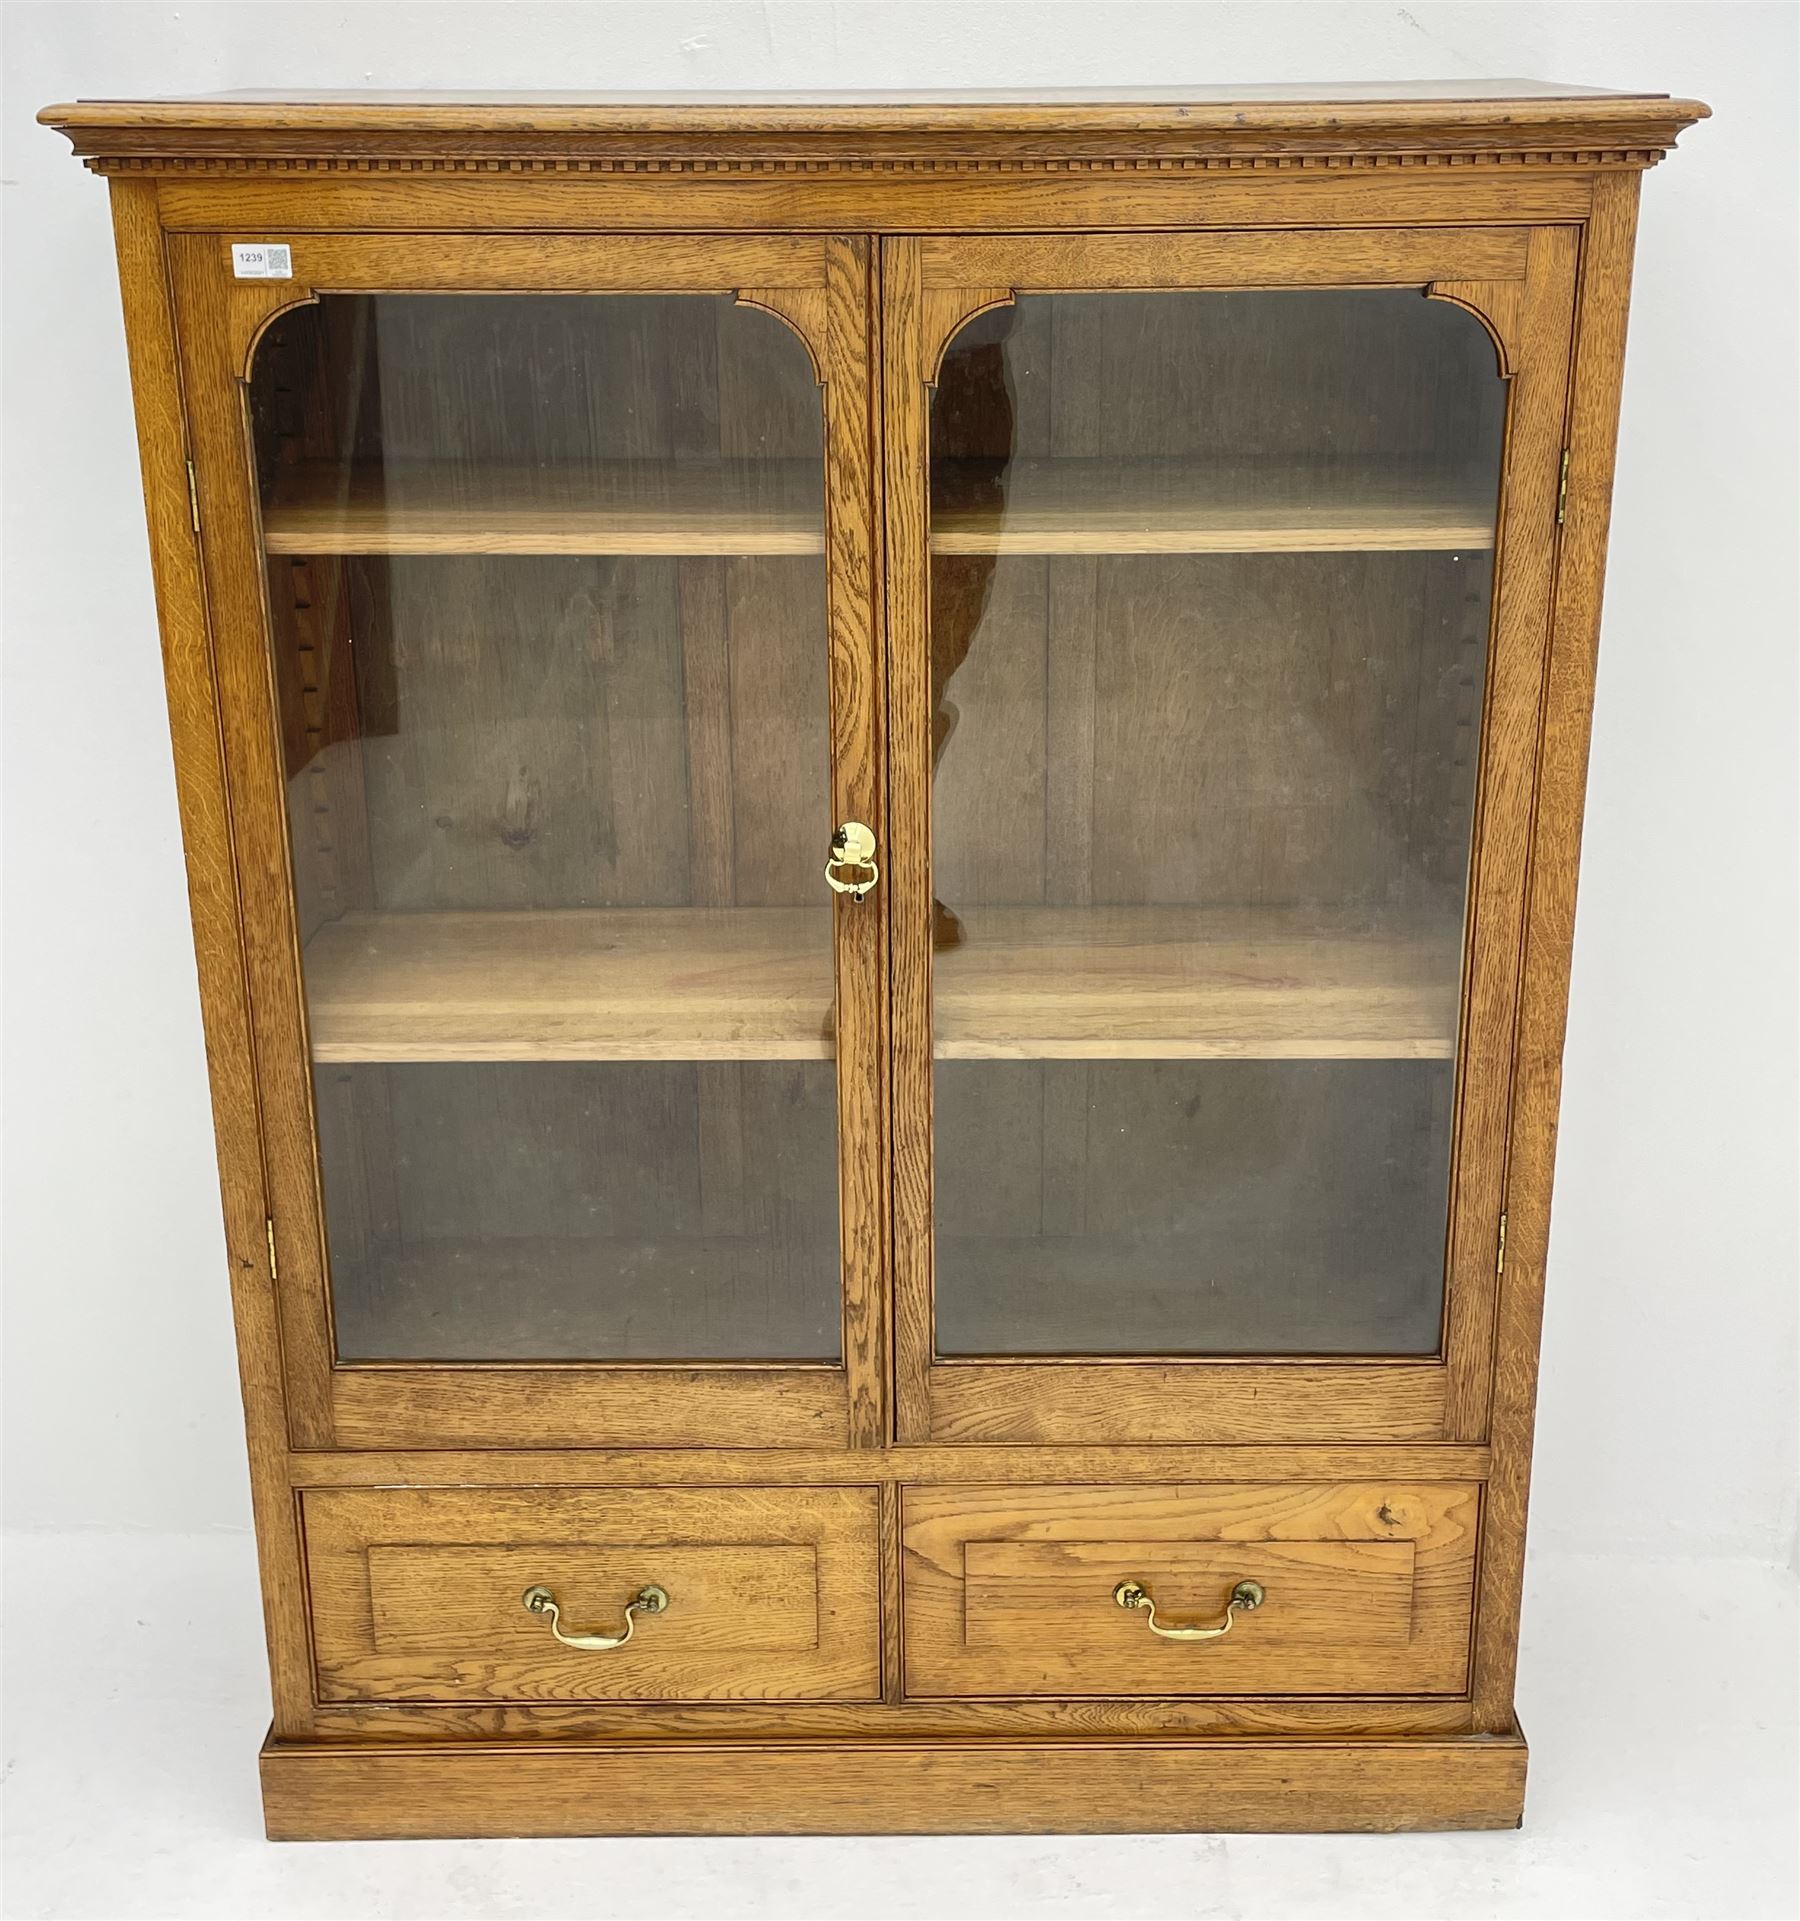 Edwardian oak glazed bookcase with drawer - Image 3 of 3